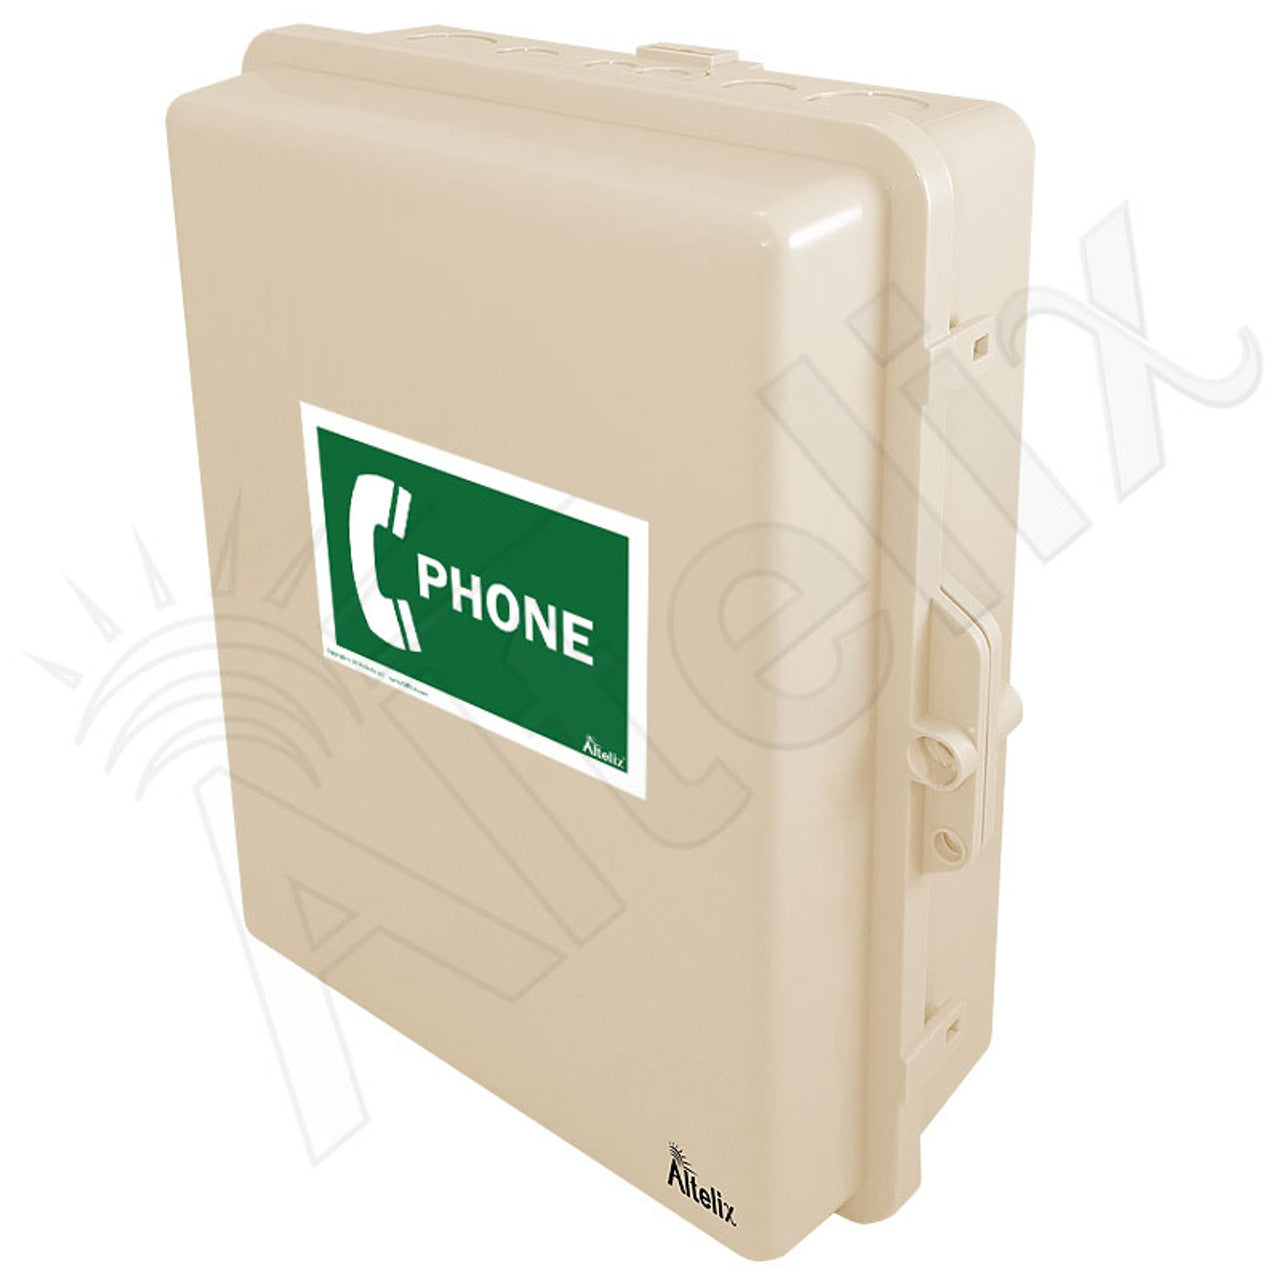 Altelix Outdoor Weatherproof Phone Call Box for Slim-Line Phones, 14x1